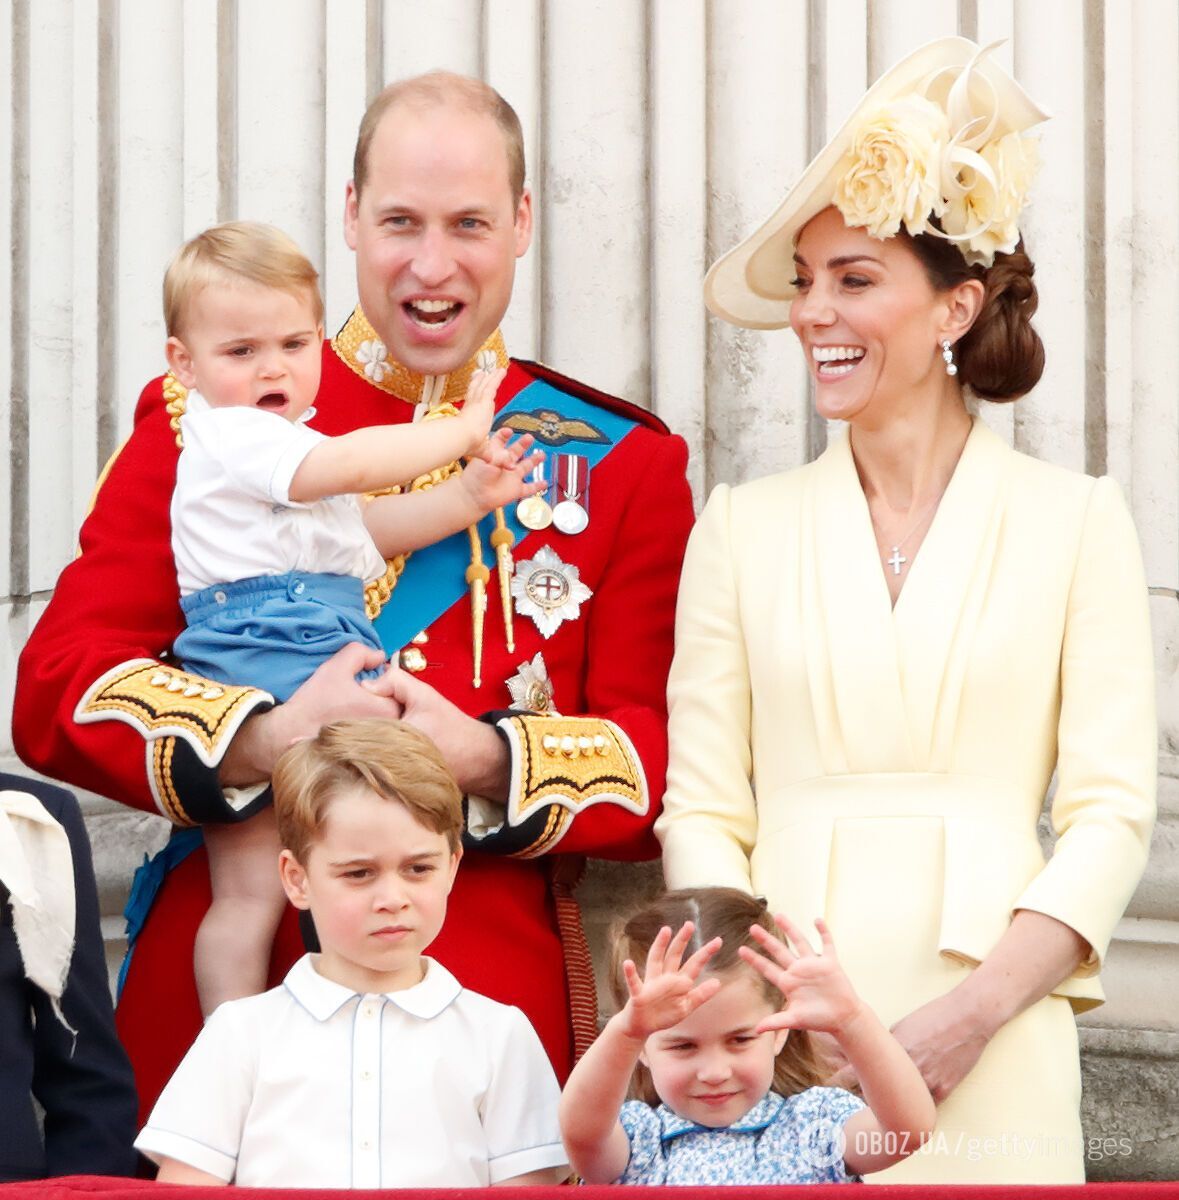 Принц Гарри и Меган Маркл сменили фамилию своим детям: раньше они были Маунтбаттен-Виндзор